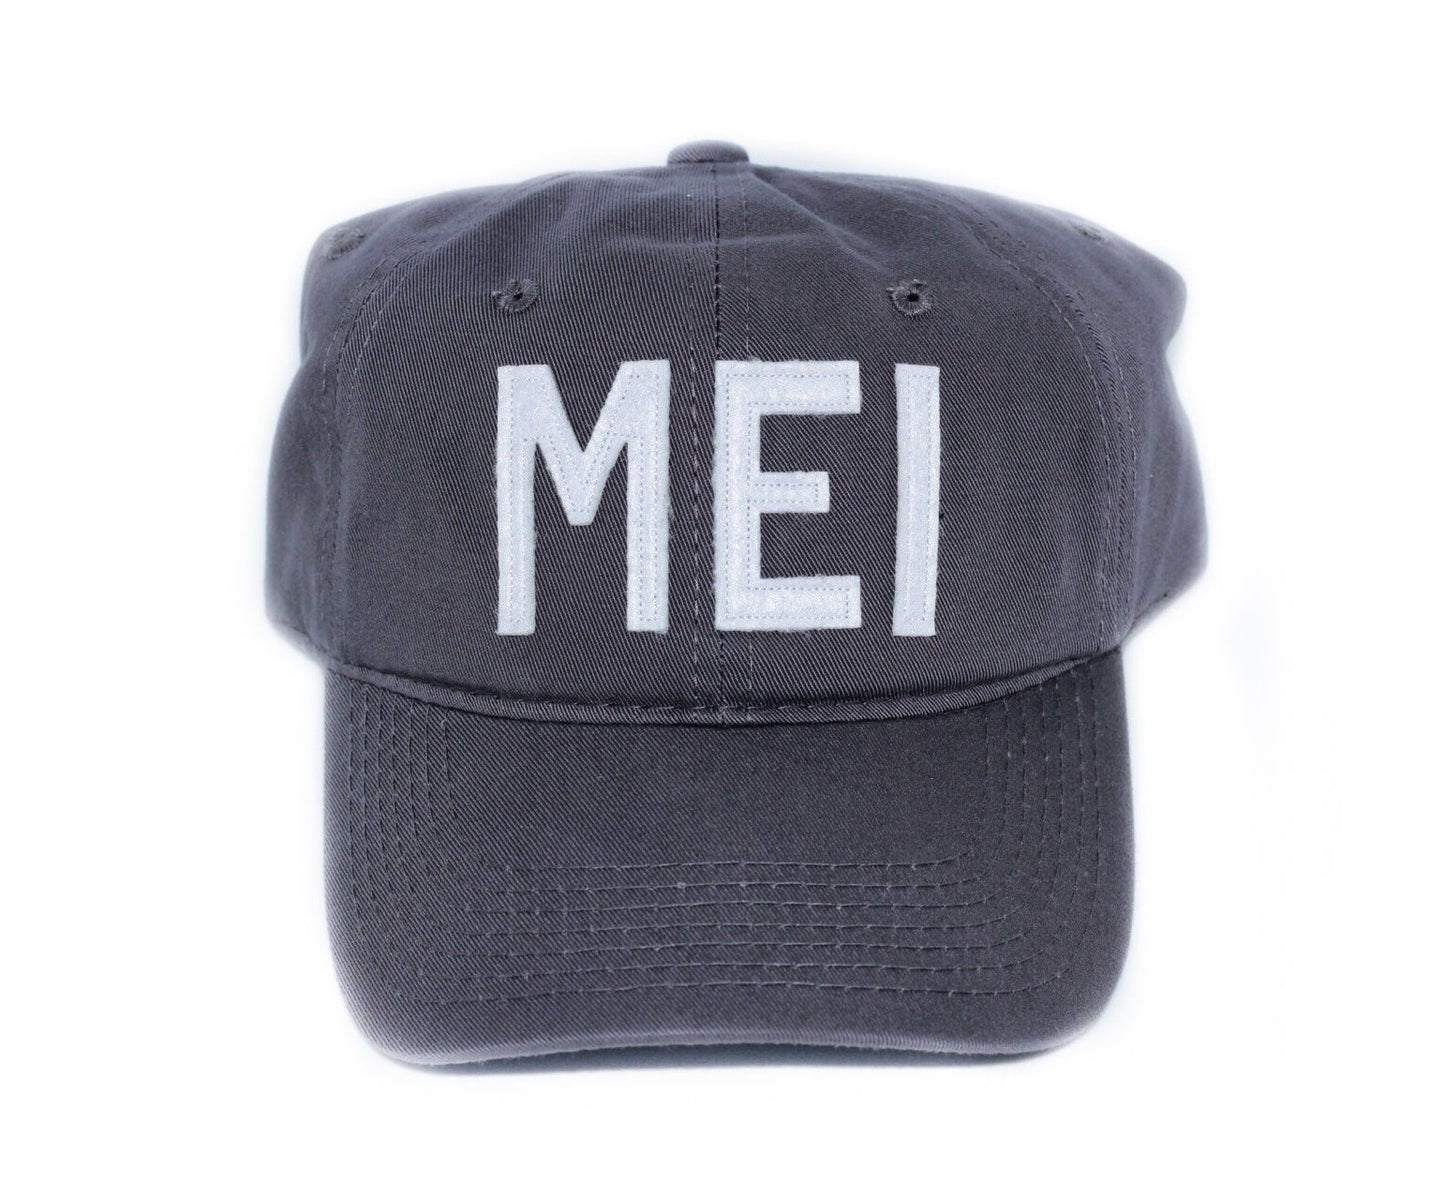 MEI - Meridian, MS Hat